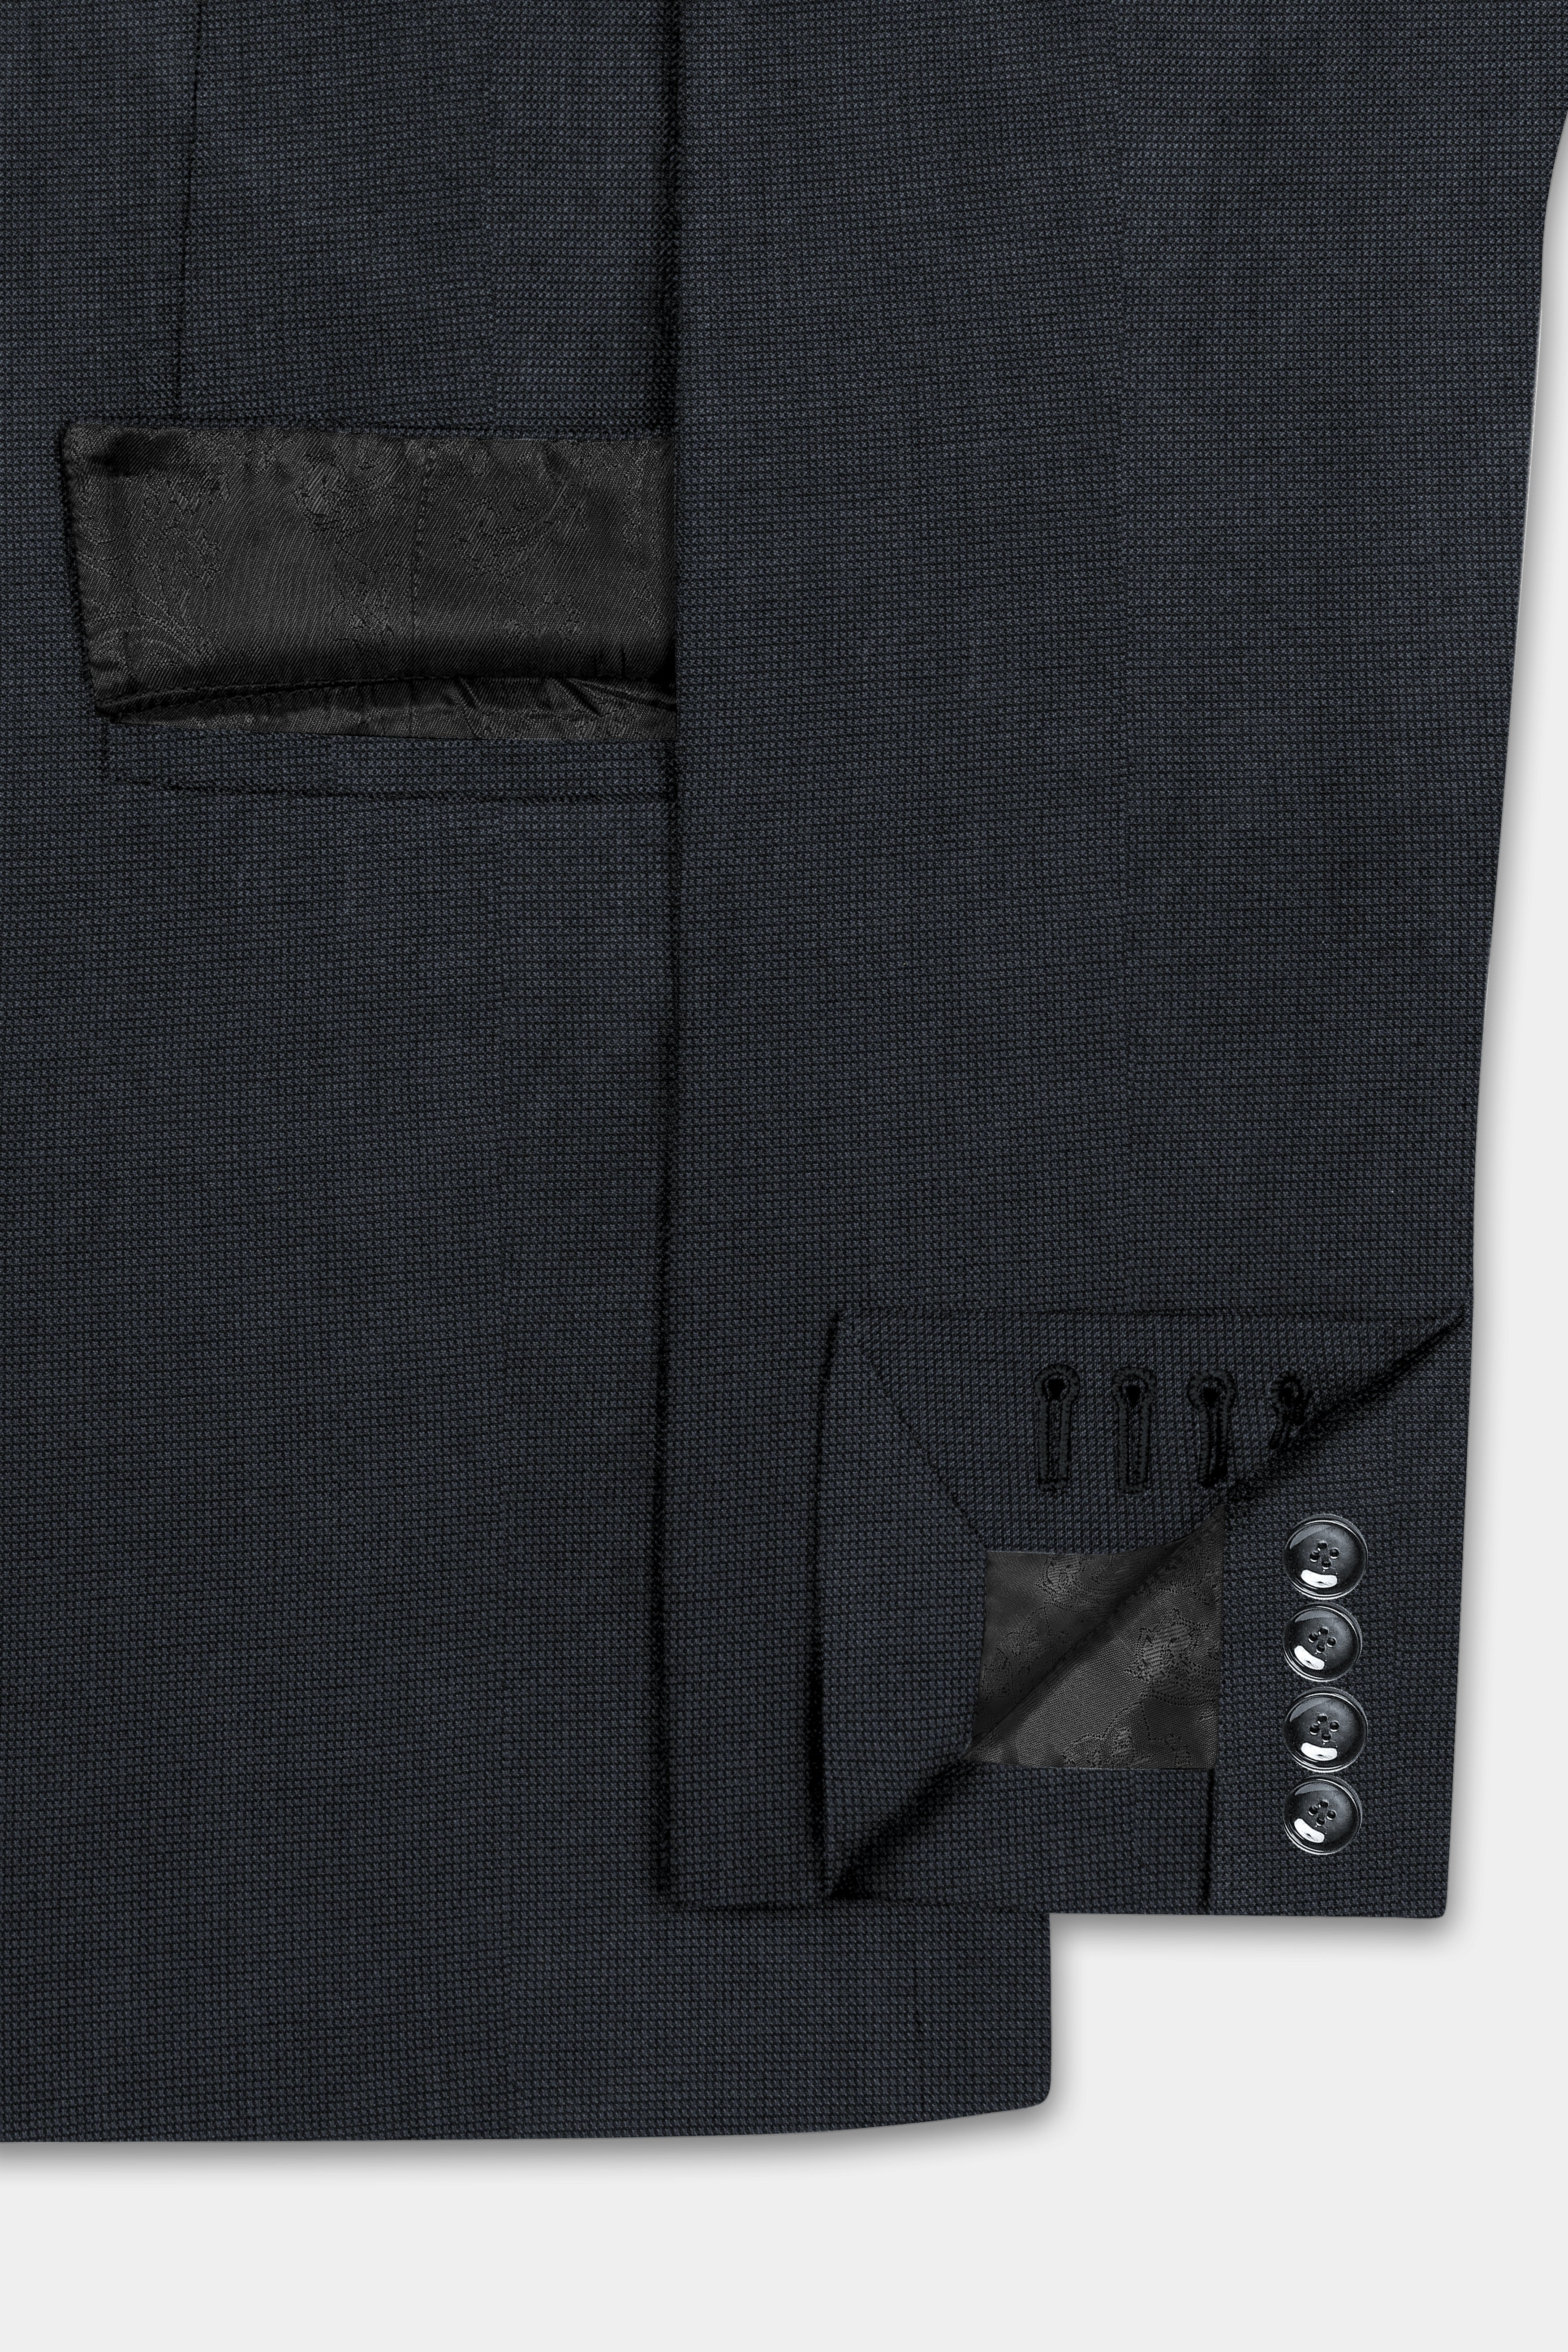 Jade Black Textured Wool Blend Suit